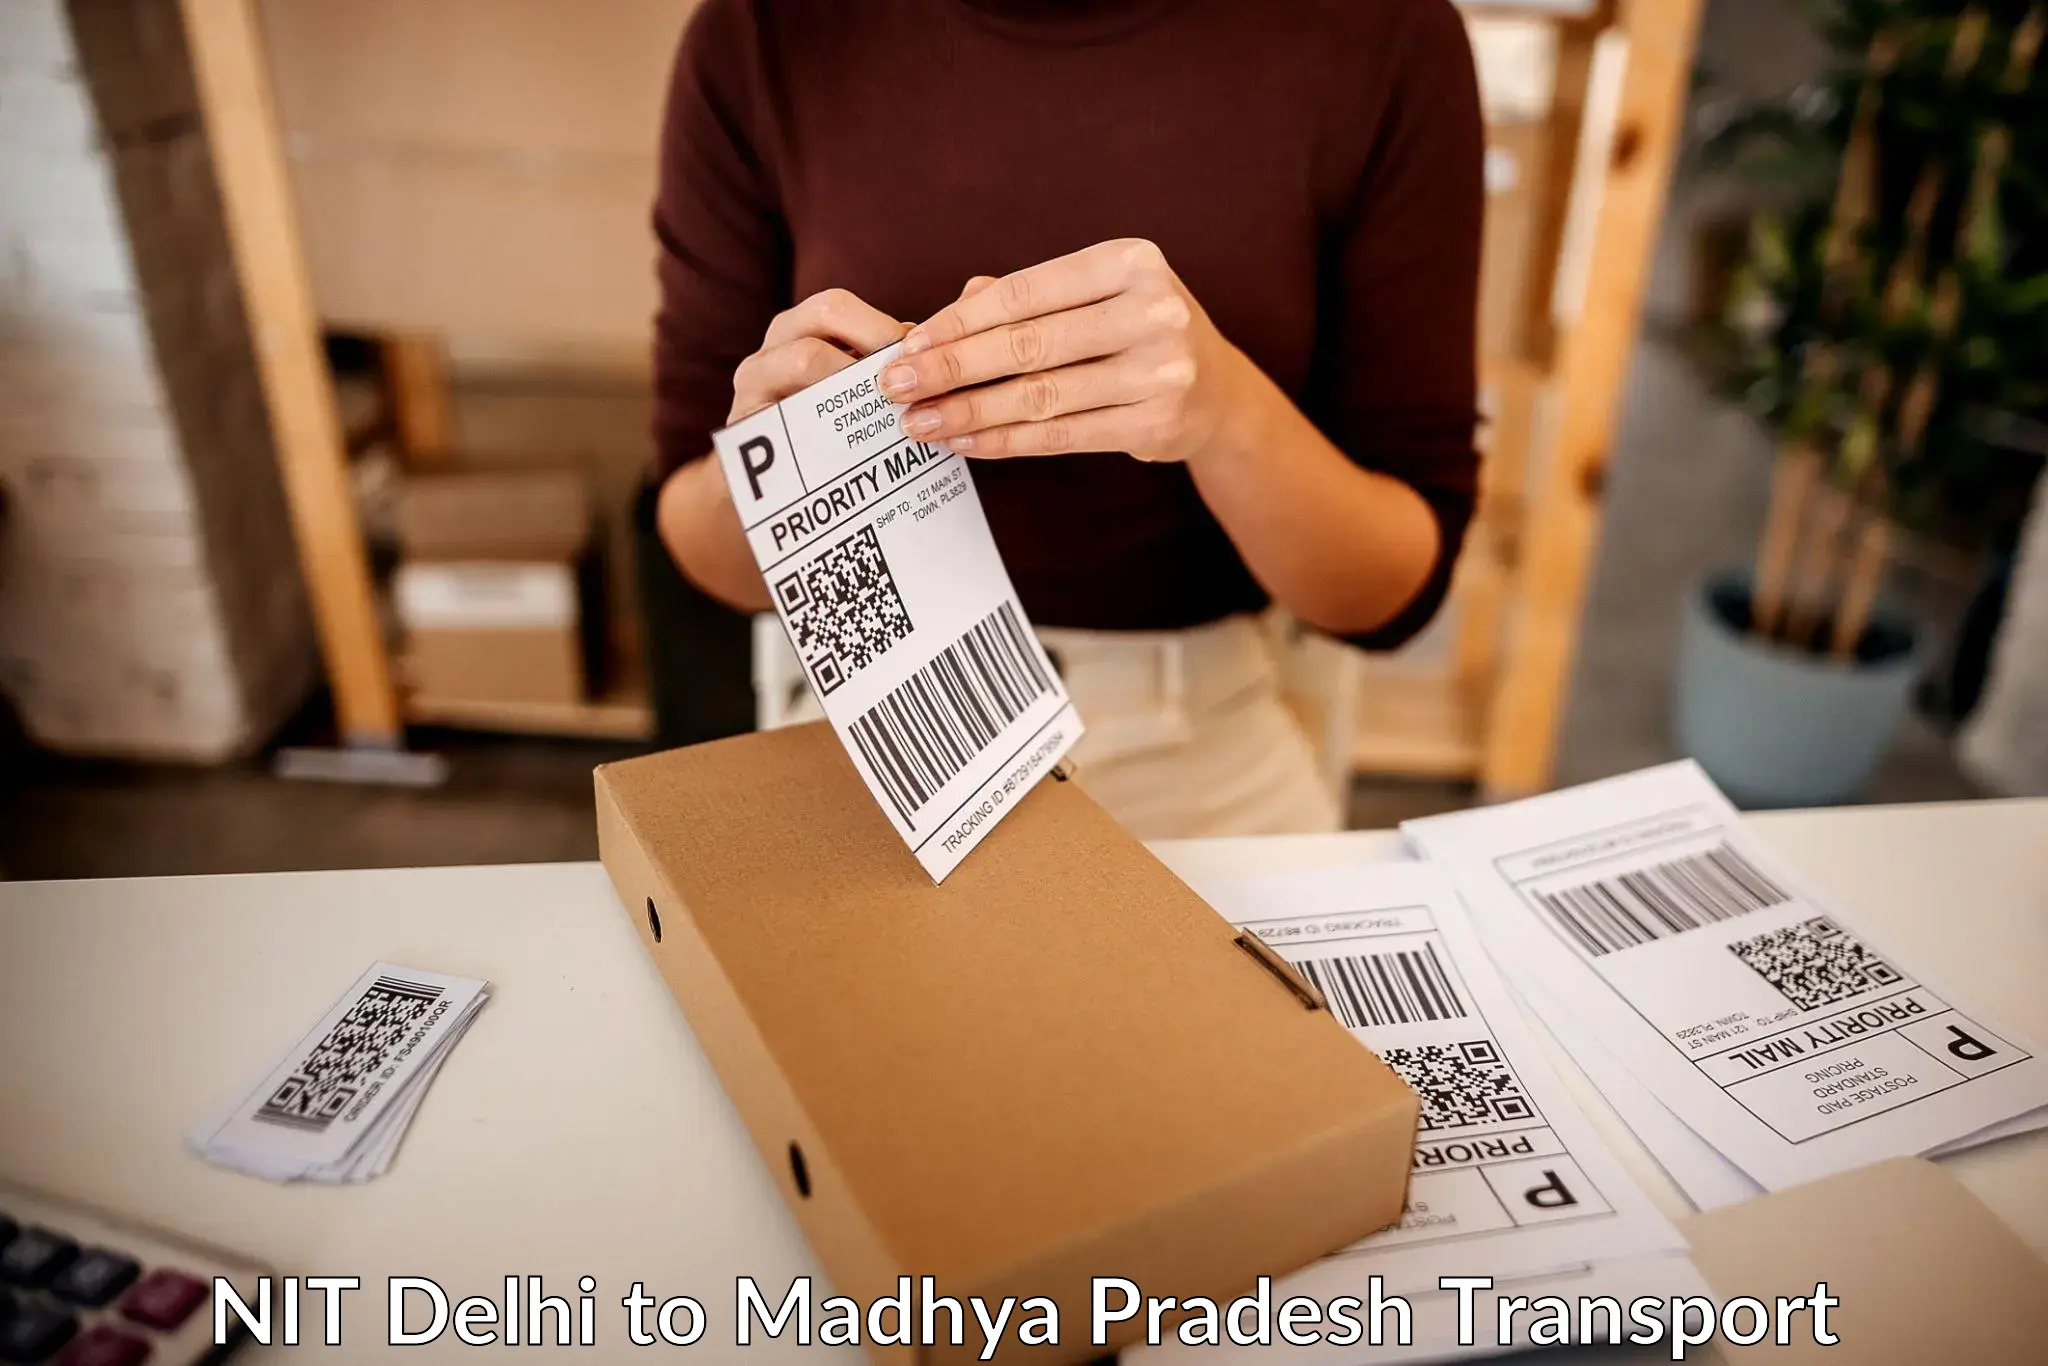 Shipping partner NIT Delhi to Sausar